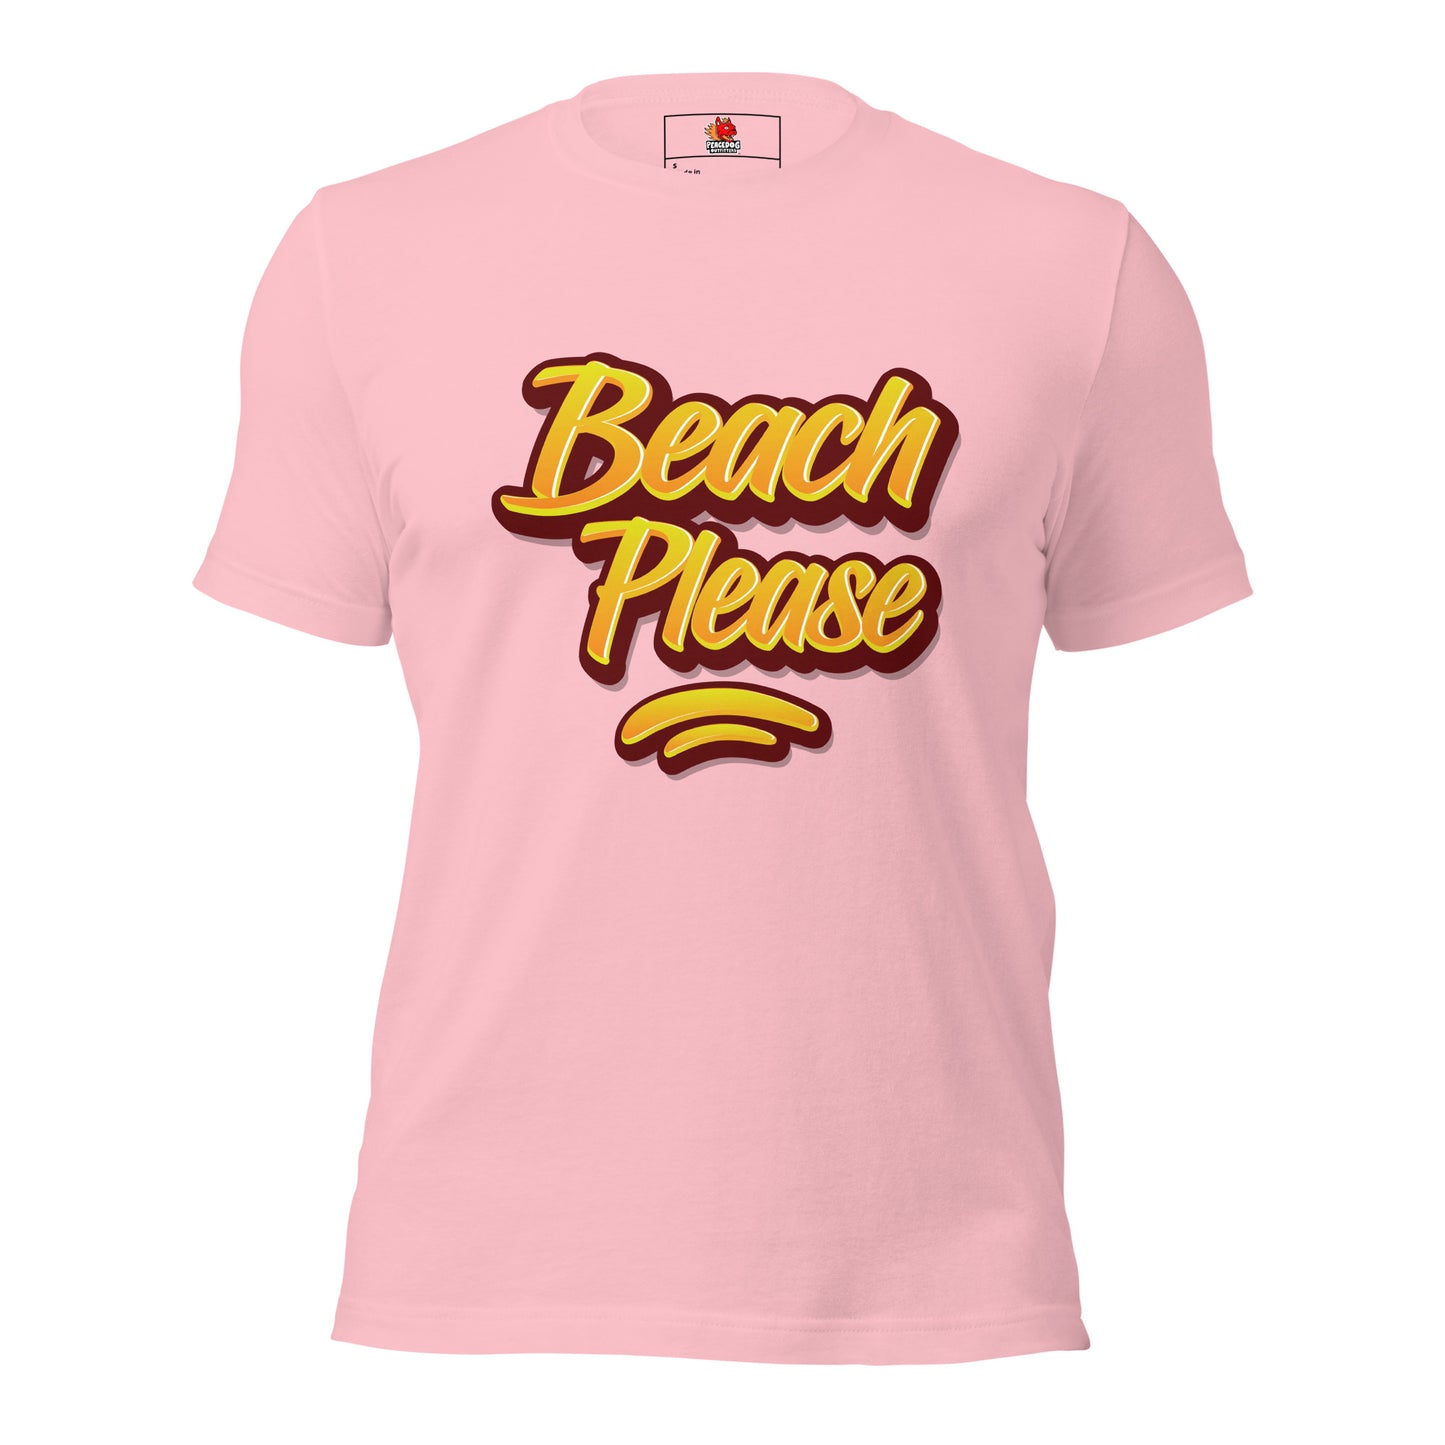 Beach Please T-Shirt